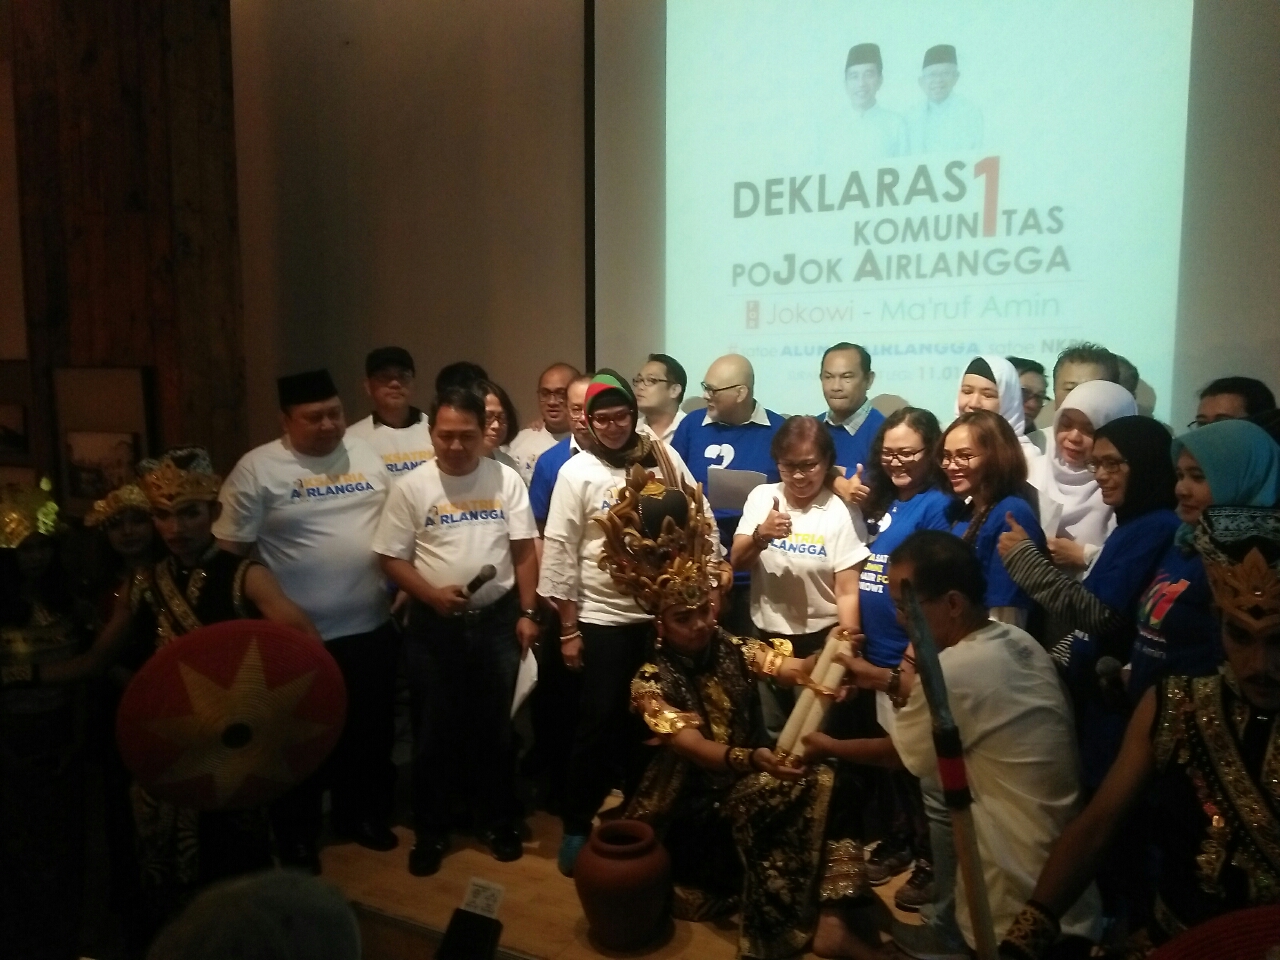 Komun1tas Pojok Airlangga Deklarasi Dukung Jokowi Maruf